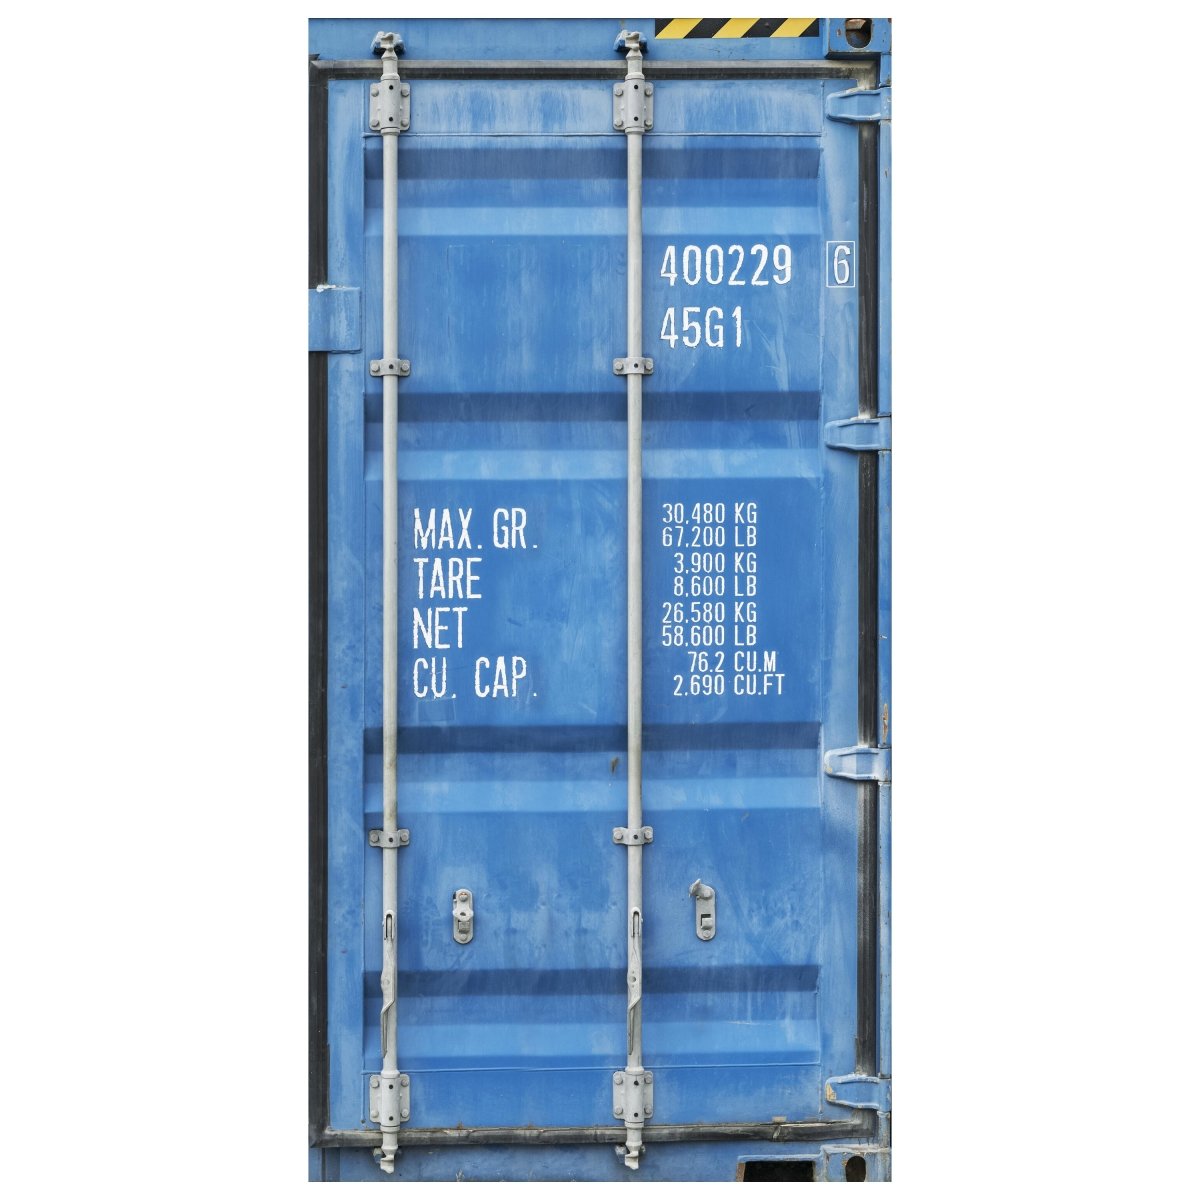 Türtapete Container Tür, Metall, Blau, Nummer M1376 - Bild 2